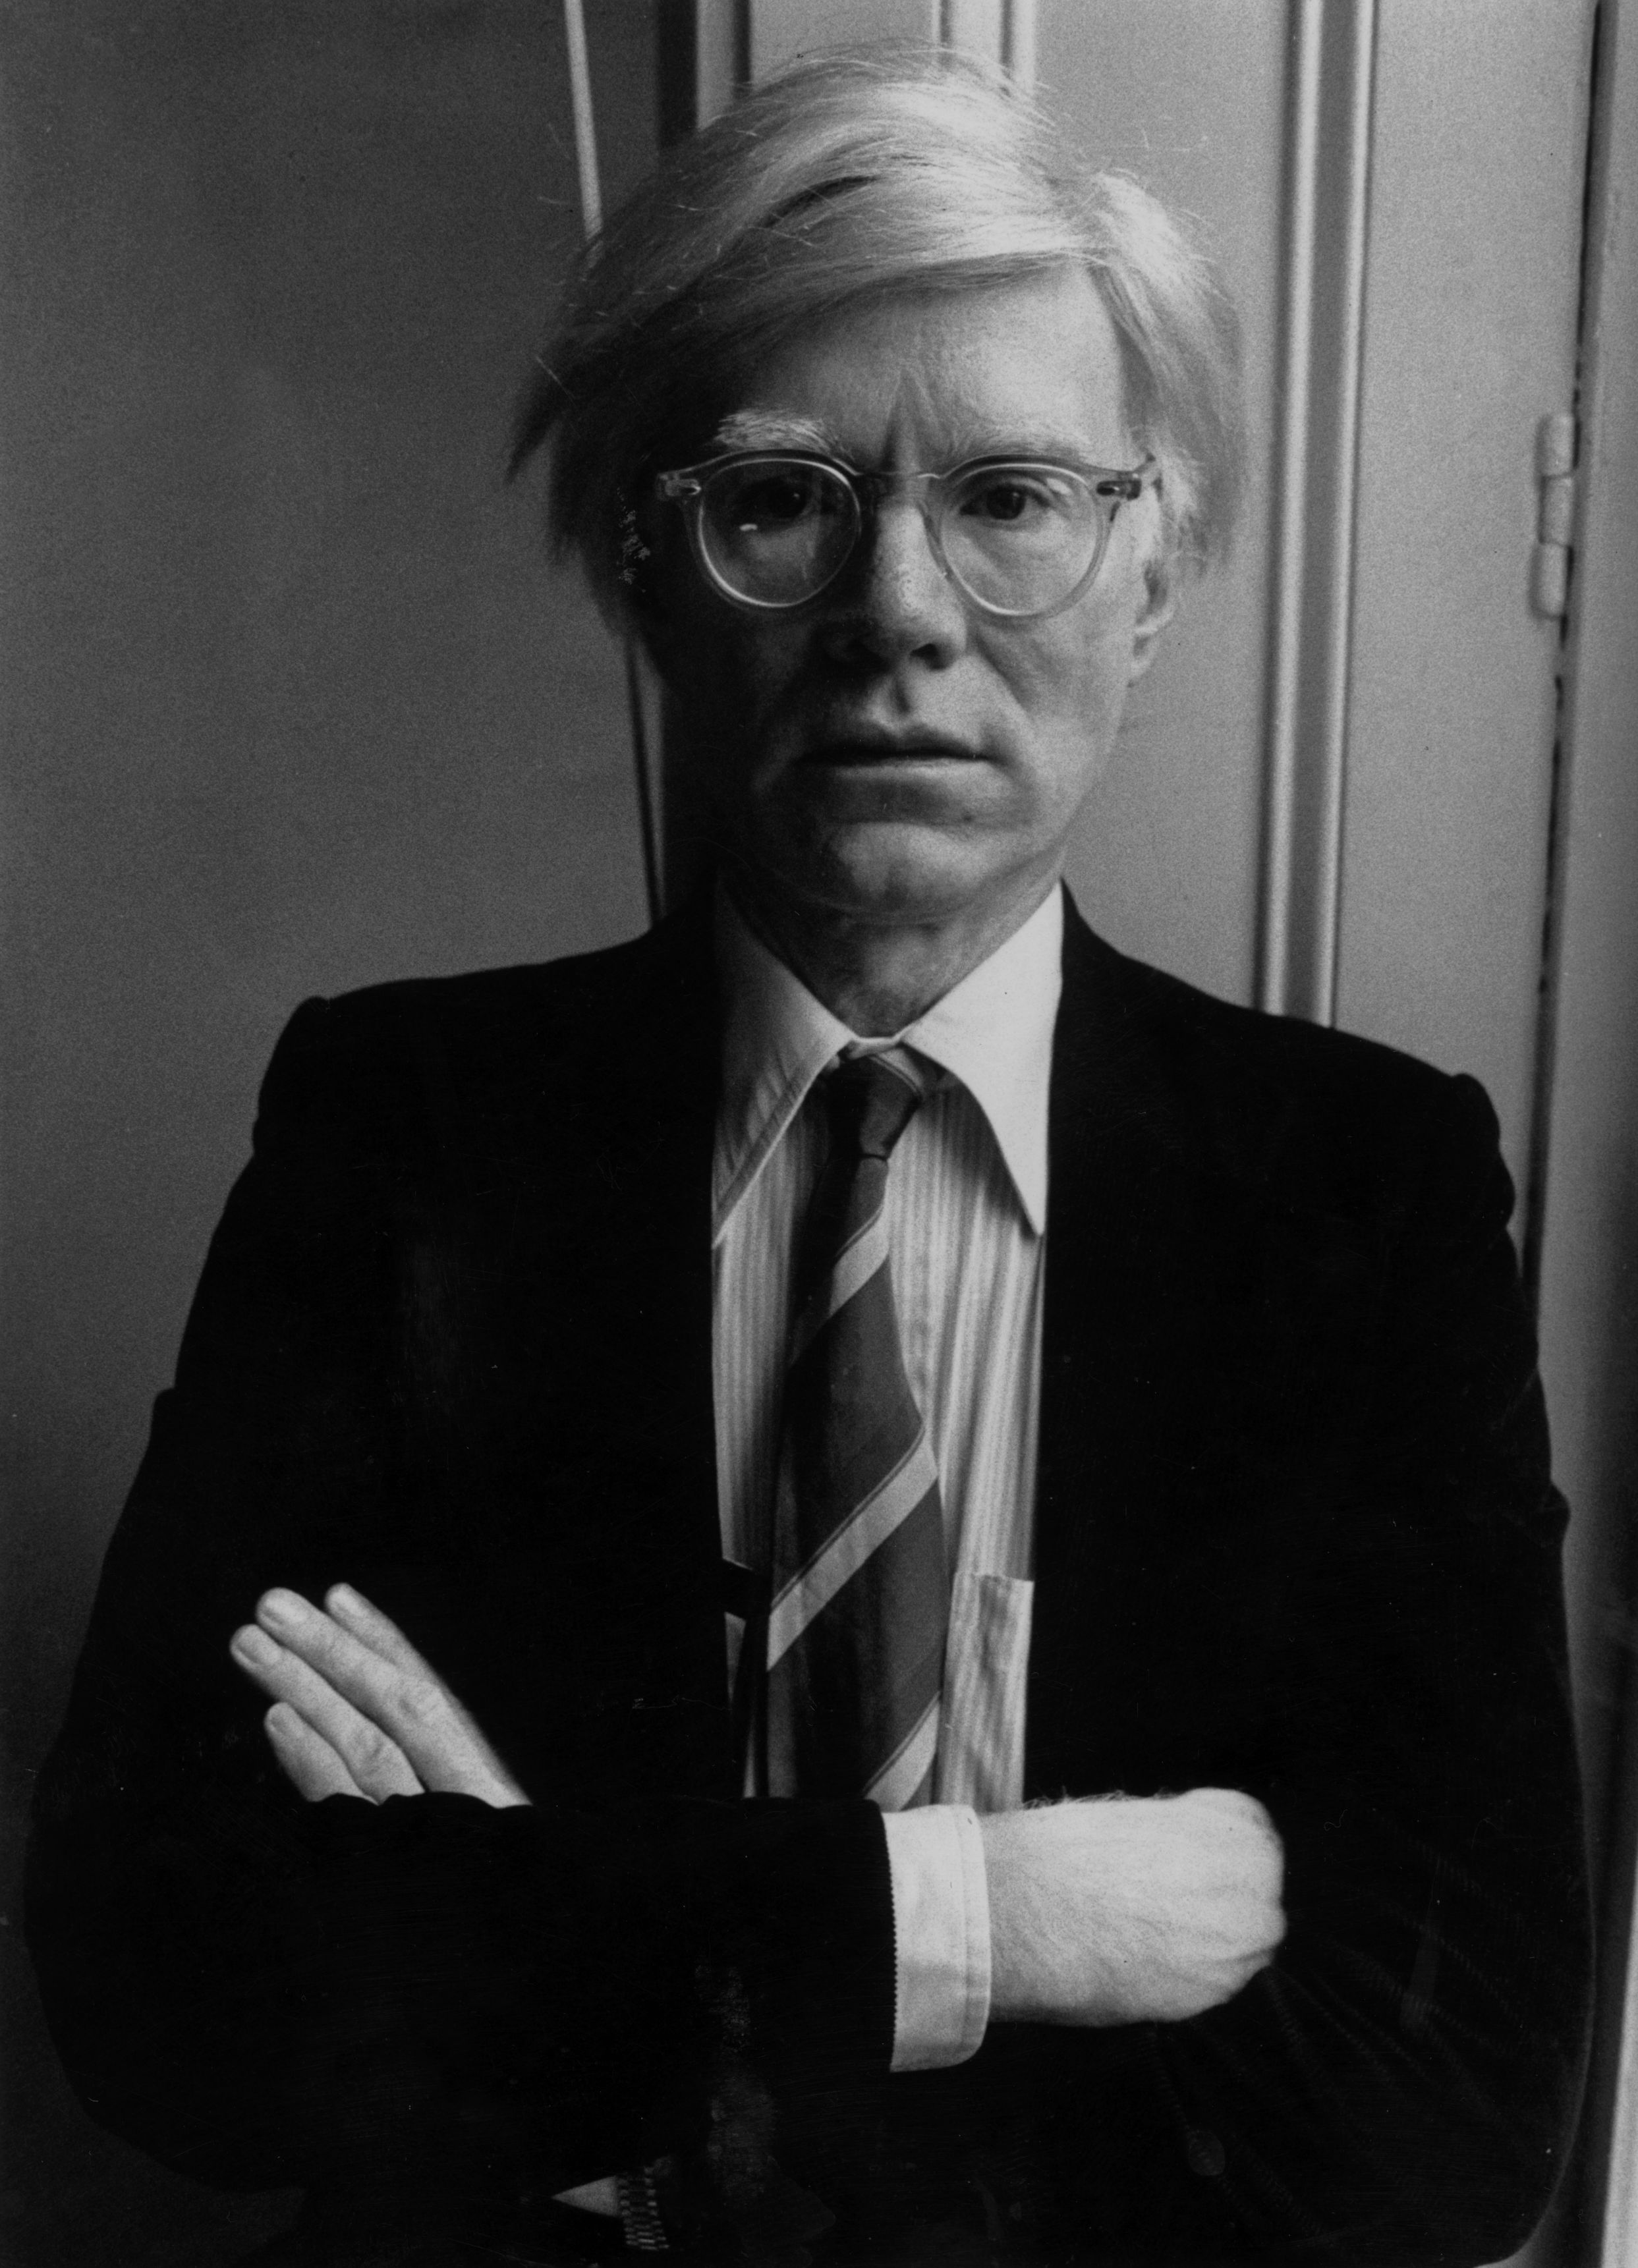 Andy Warhol - 6. August 1928 - 22. Februar 1987